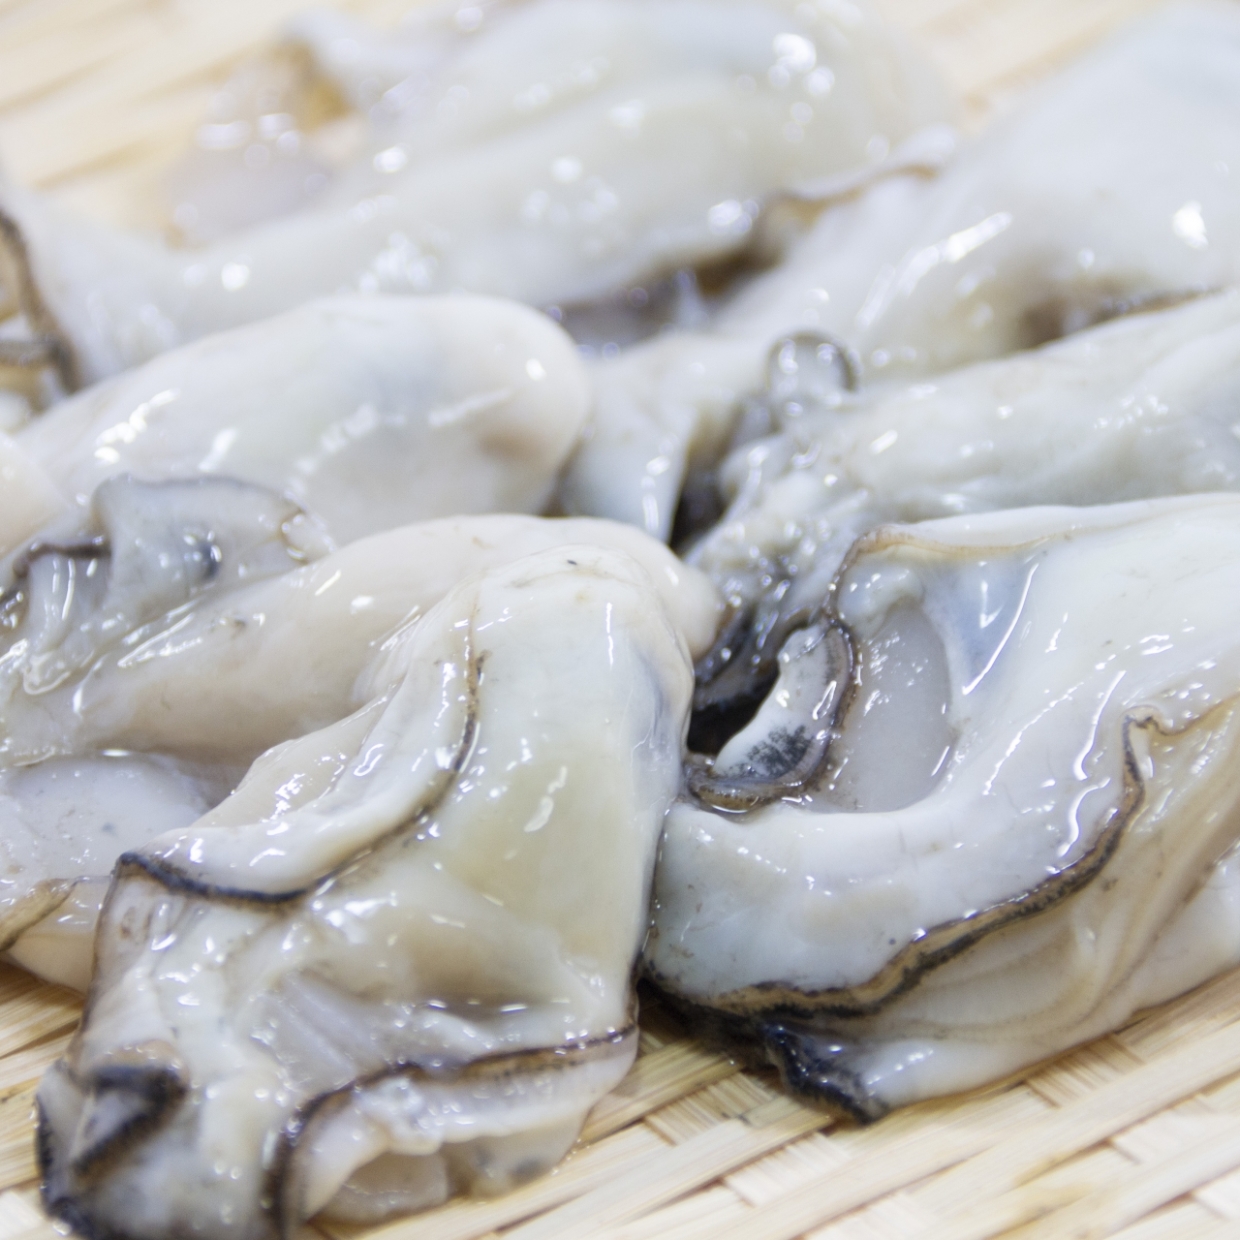  冬に味わいたい旨味たっぷりの牡蠣！ぷりぷりの牡蠣を自宅で楽しむレシピ3選 